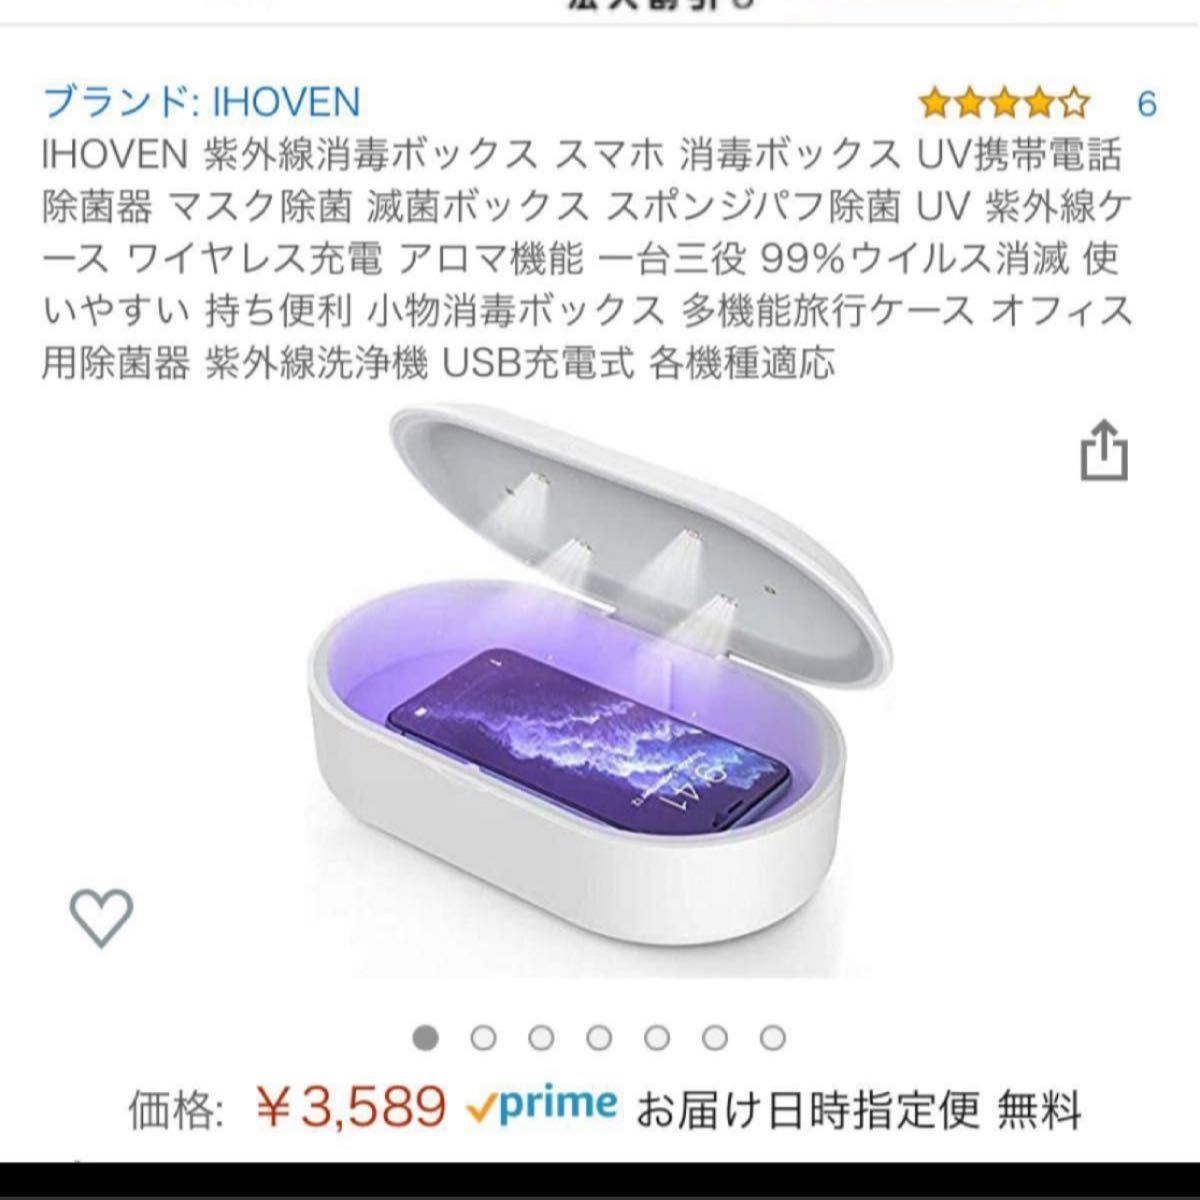 9 」紫外線消毒ボックス スマホ 消毒ボックス UV携帯電話除菌器 マスク除菌 